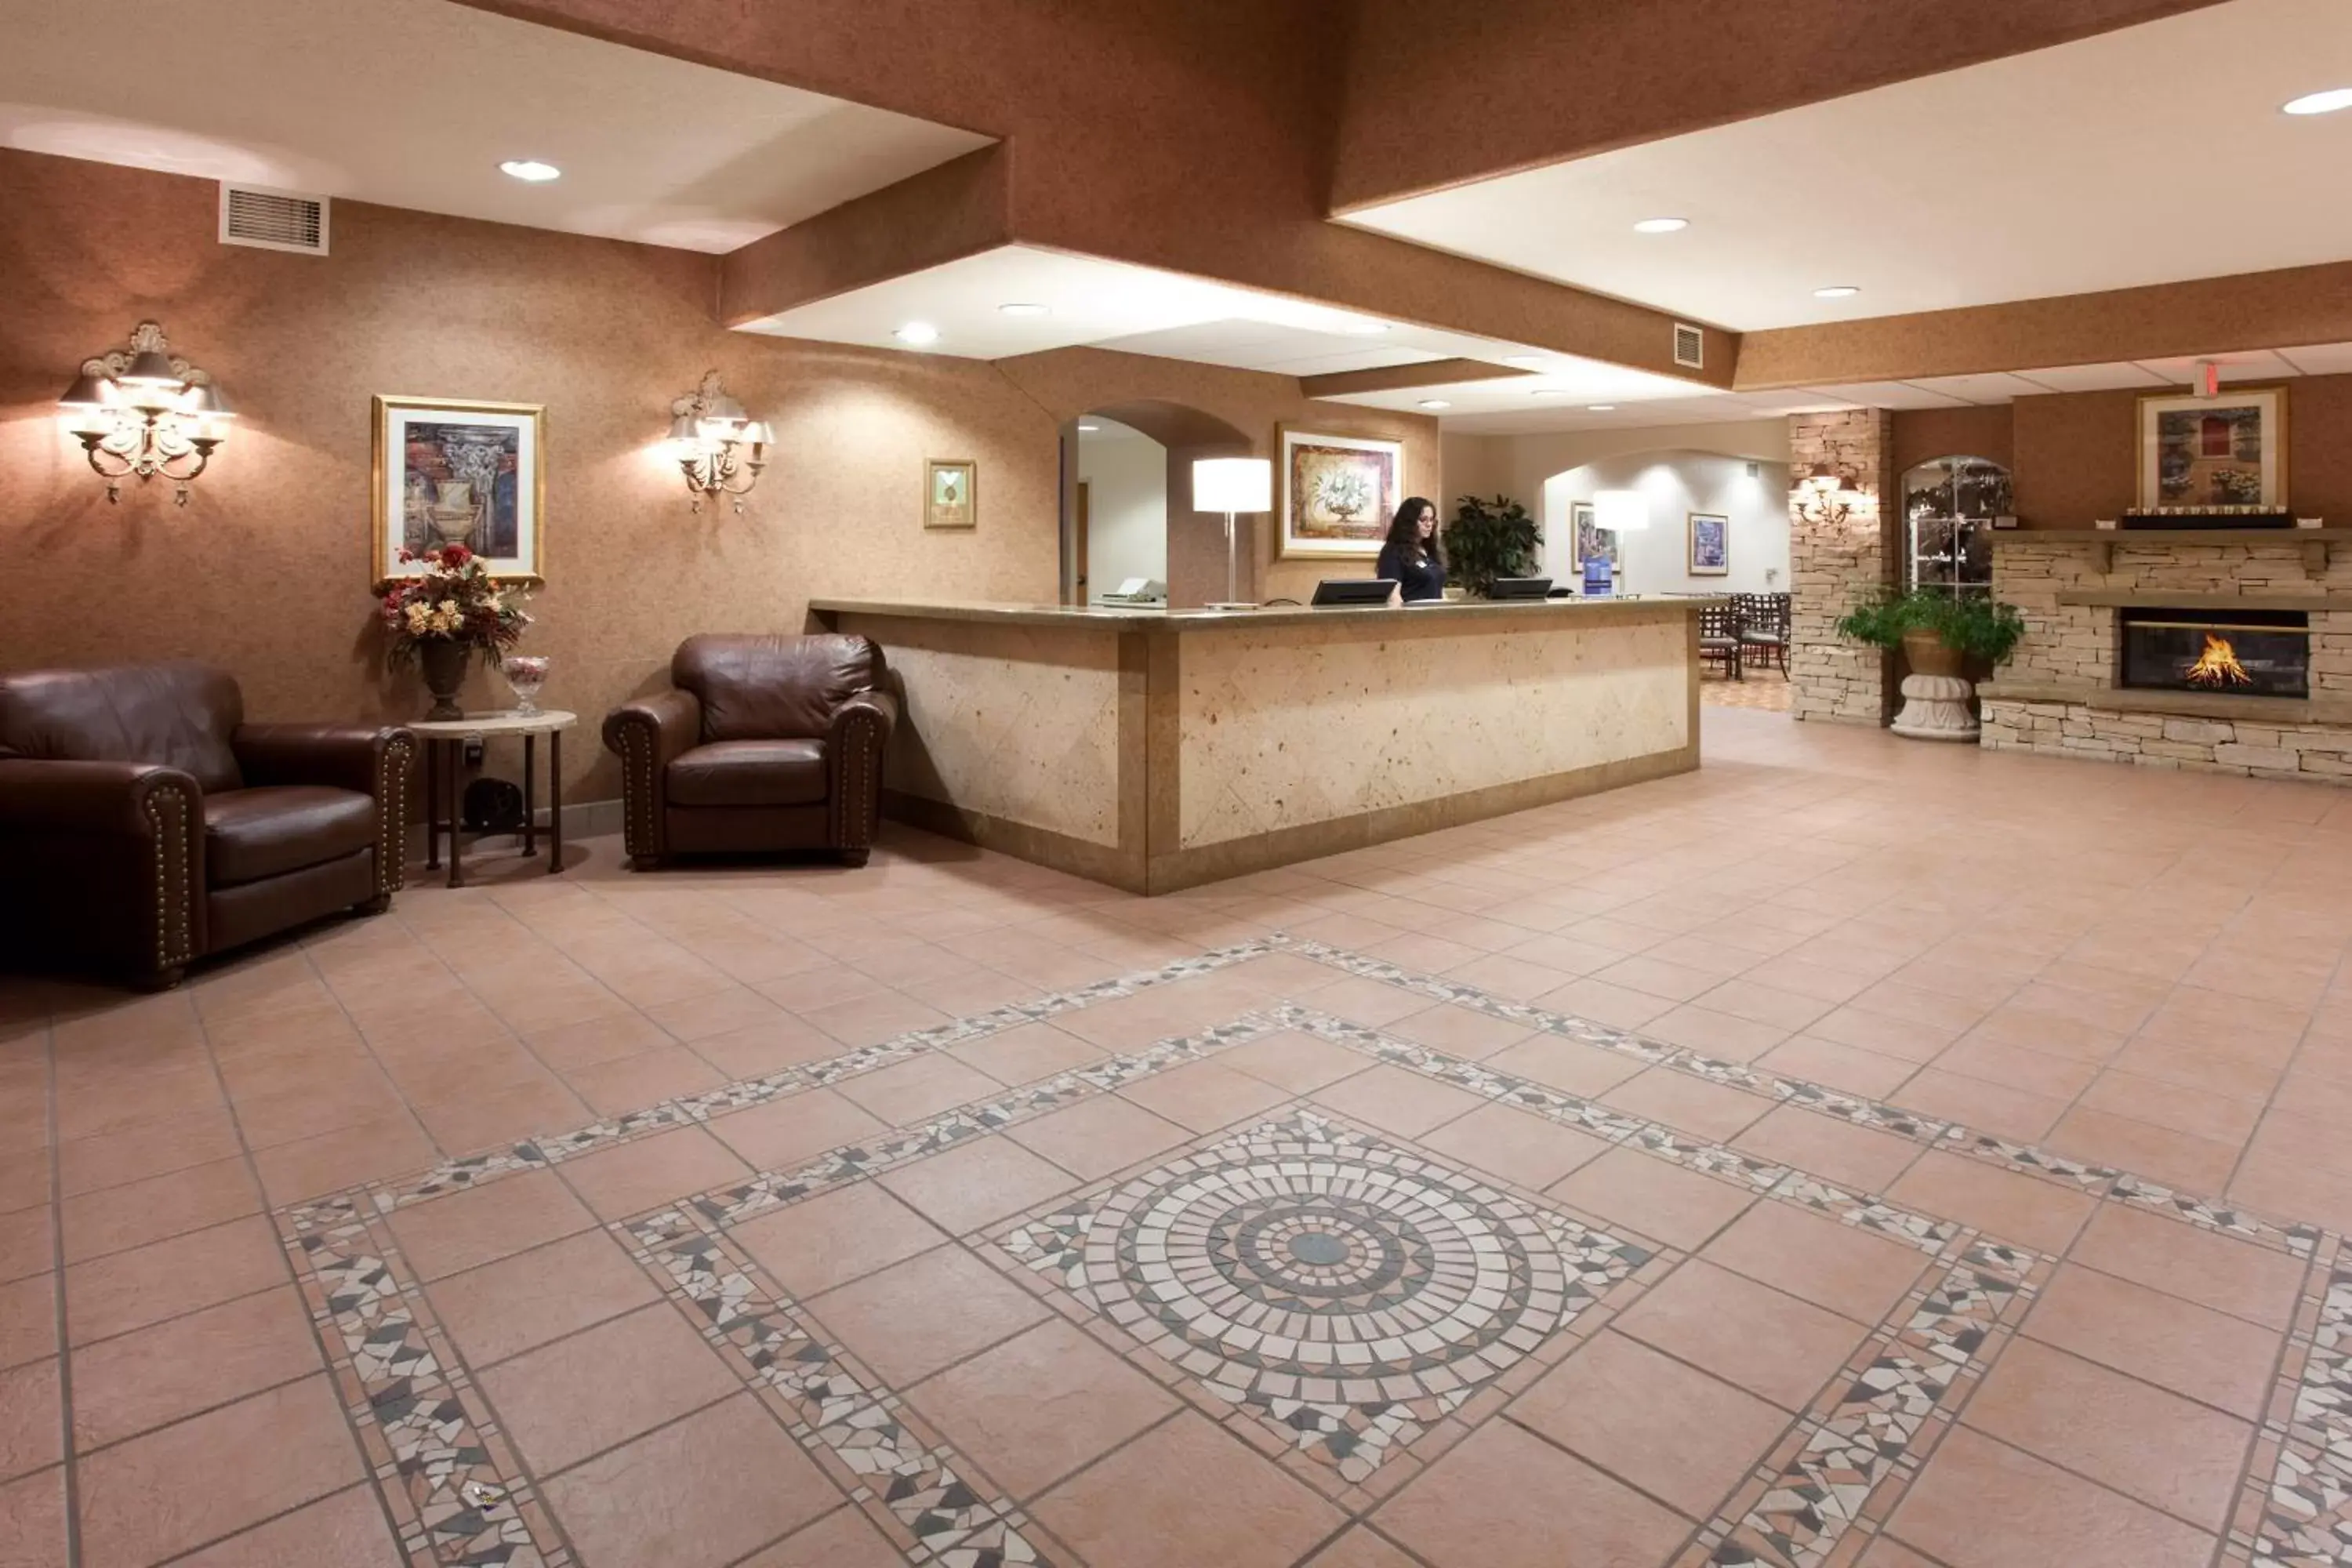 Lobby or reception, Lobby/Reception in Baymont by Wyndham Belen NM